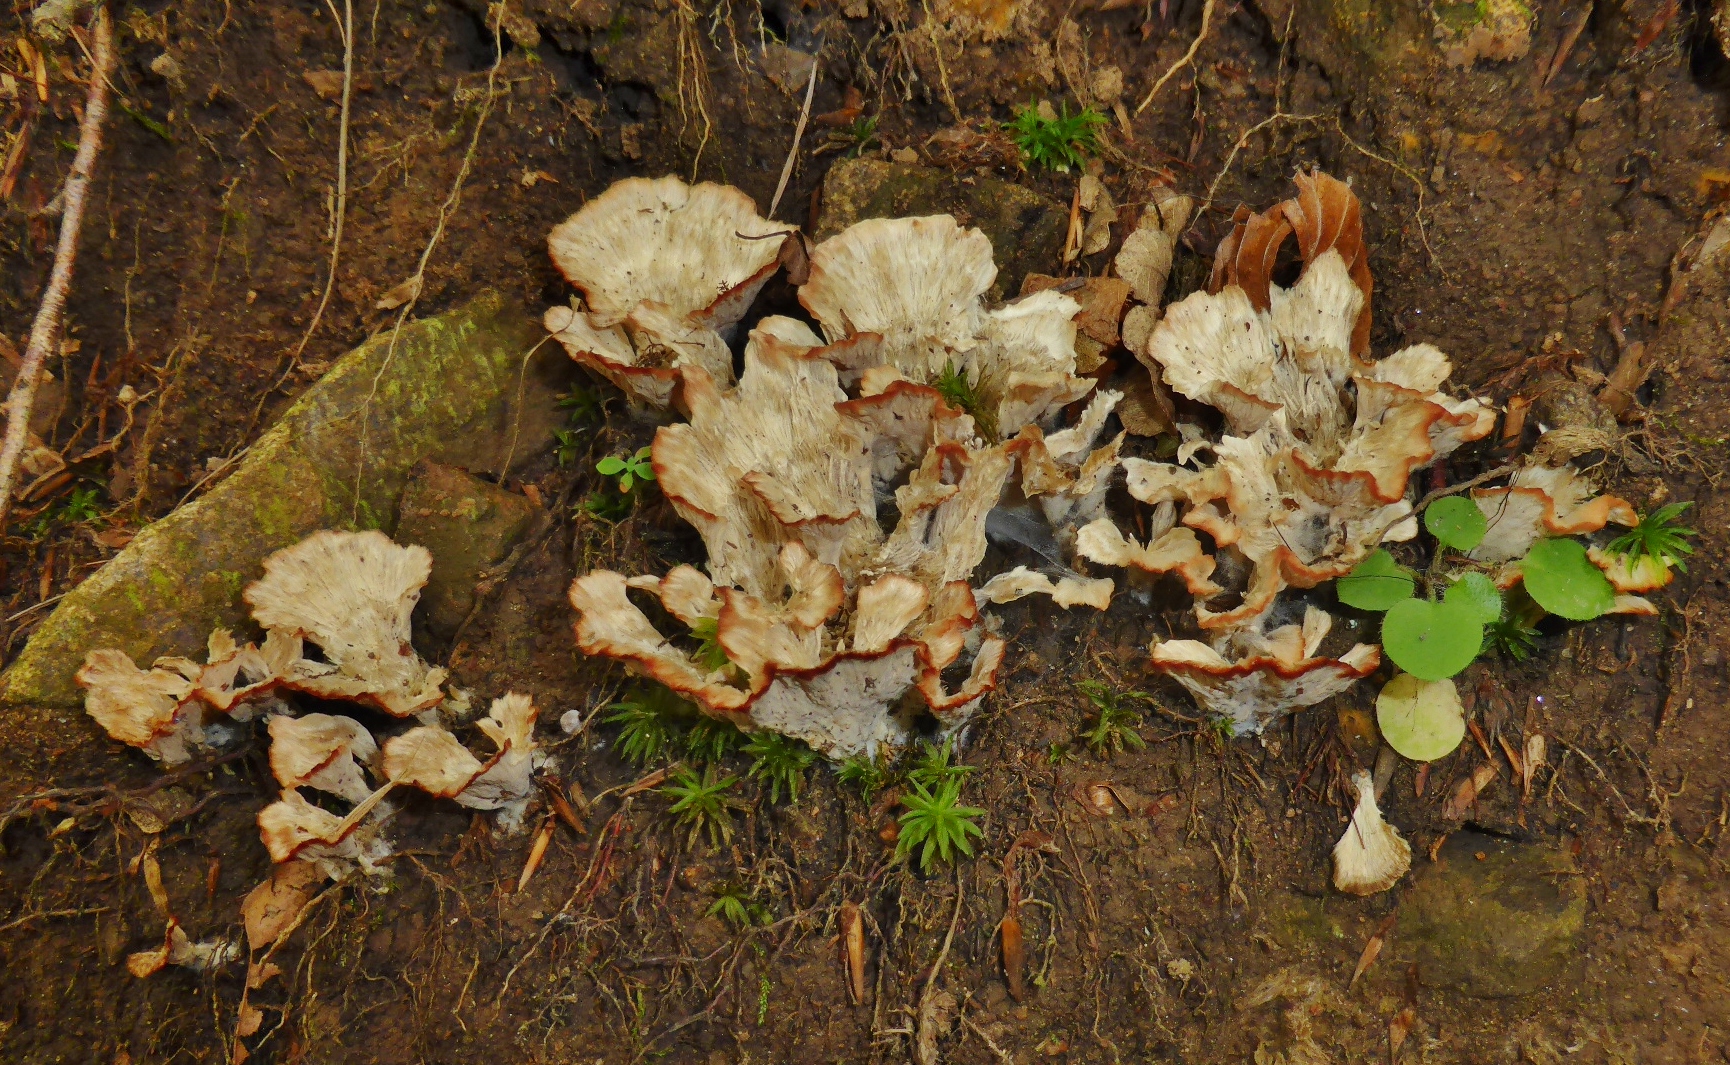 Cotylidia pannosa Striegeliger Kreiselpilz Schwarzwald Hornberg Buchenwald Krieglsteiner Moose Mykorrhiza